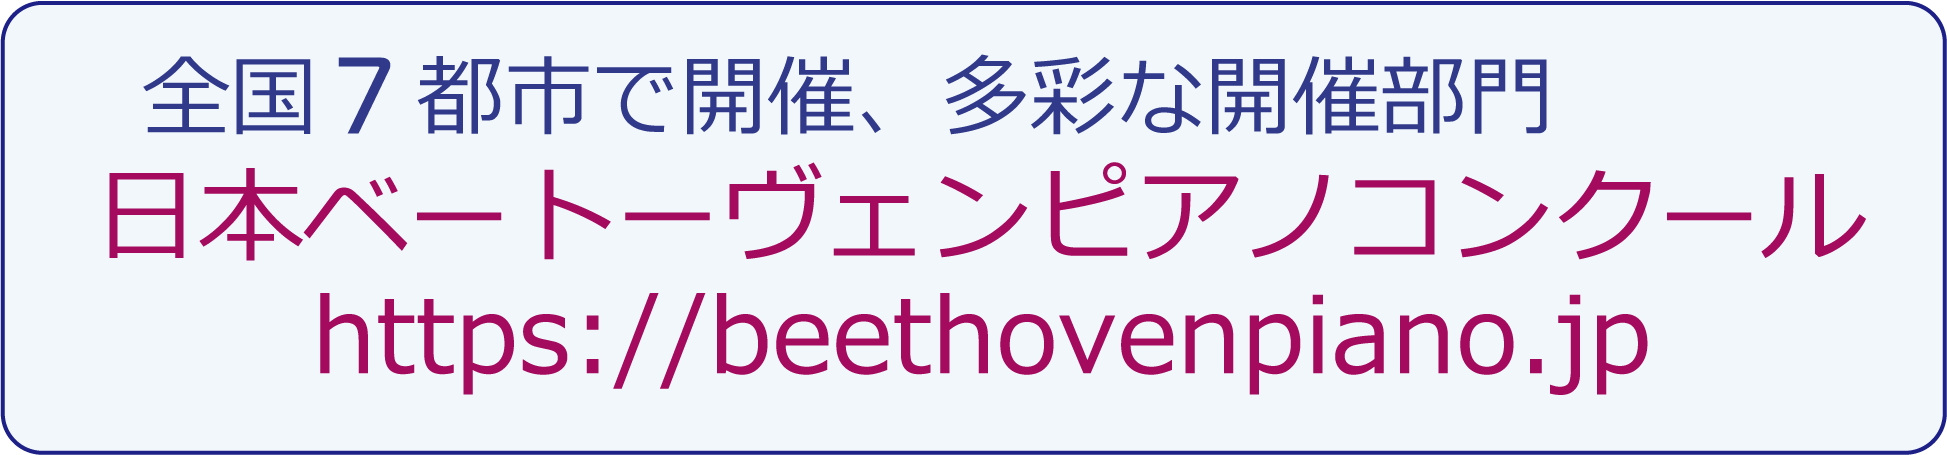 日本ベートーヴェンピアノコンクール